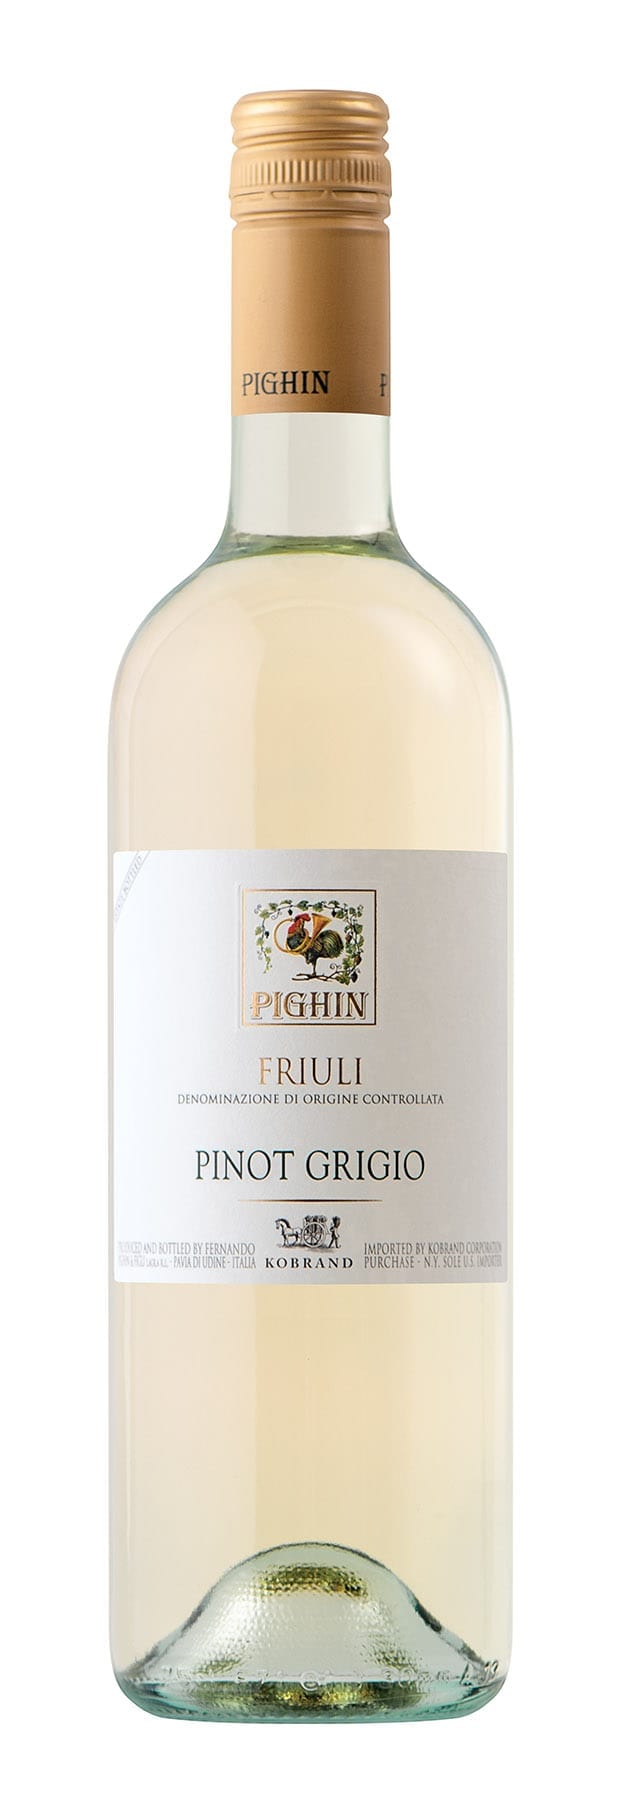 Bottle of white wine, Pinot Grigio, Italian, Friuli, Pighin